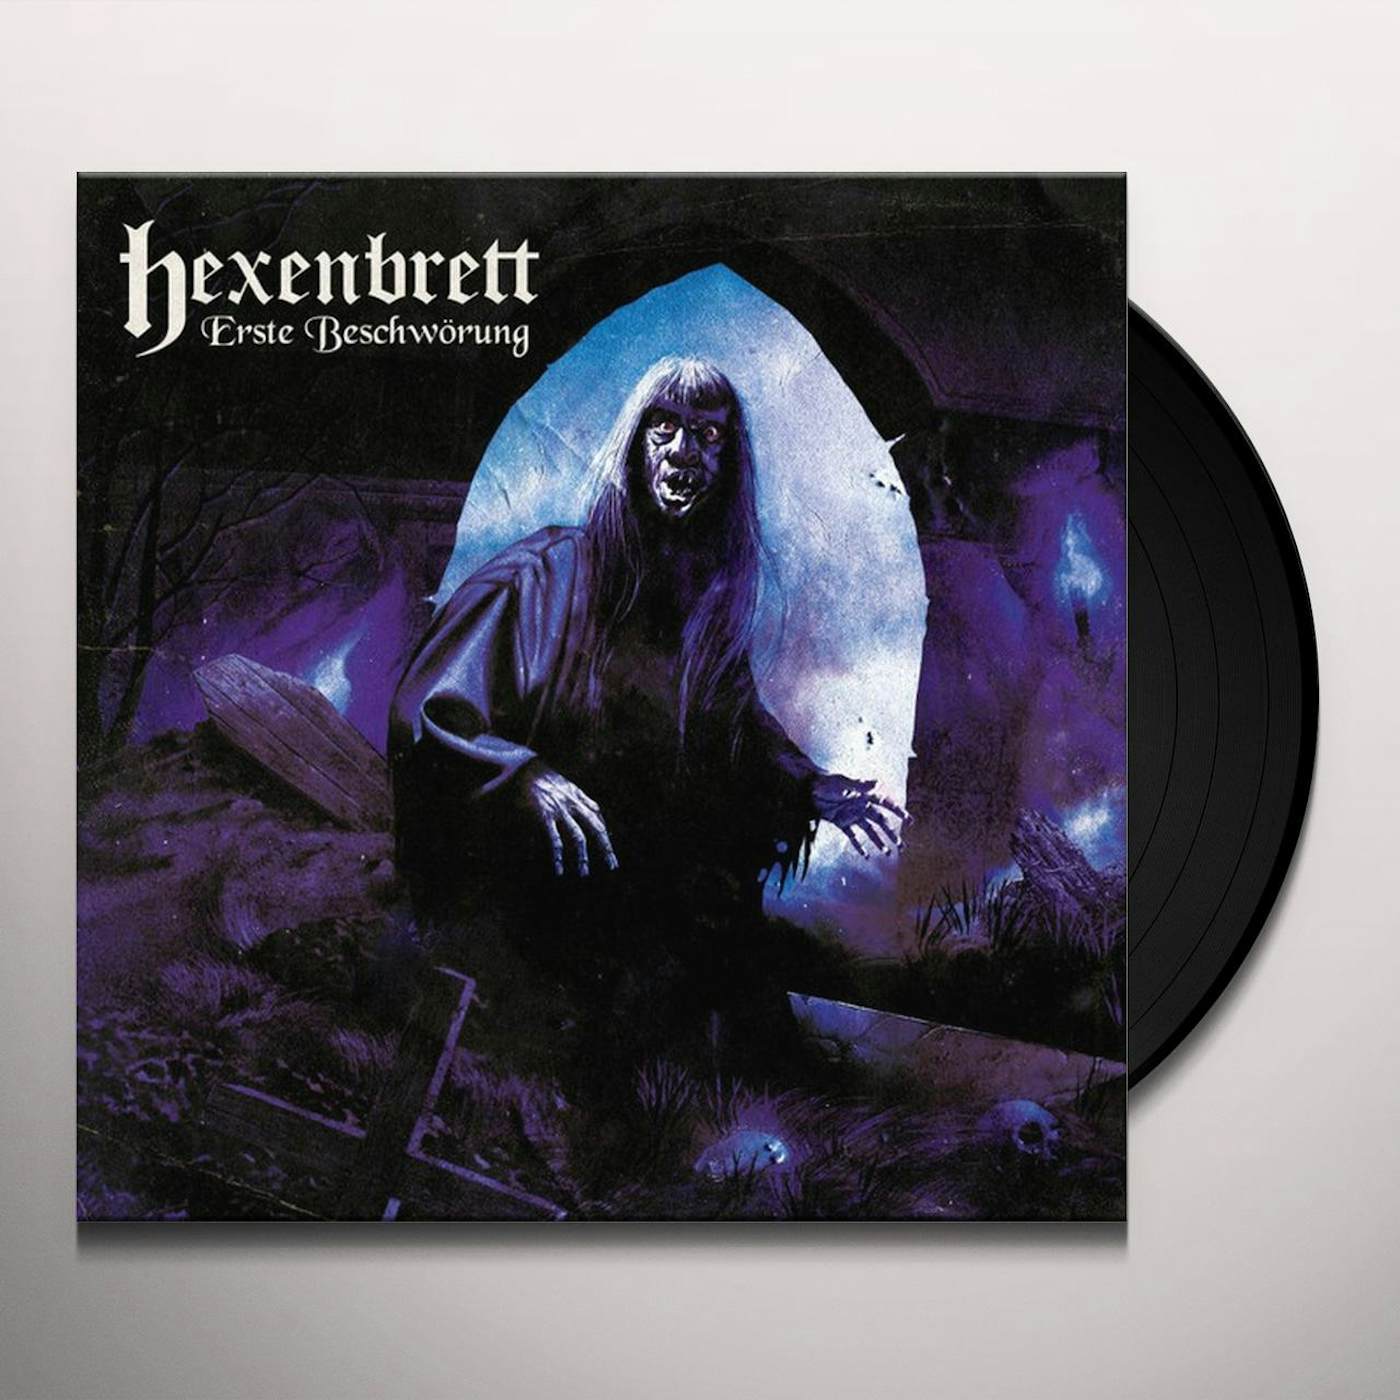 Hexenbrett Record Vinyl - ERSTE BESCHWORUNG